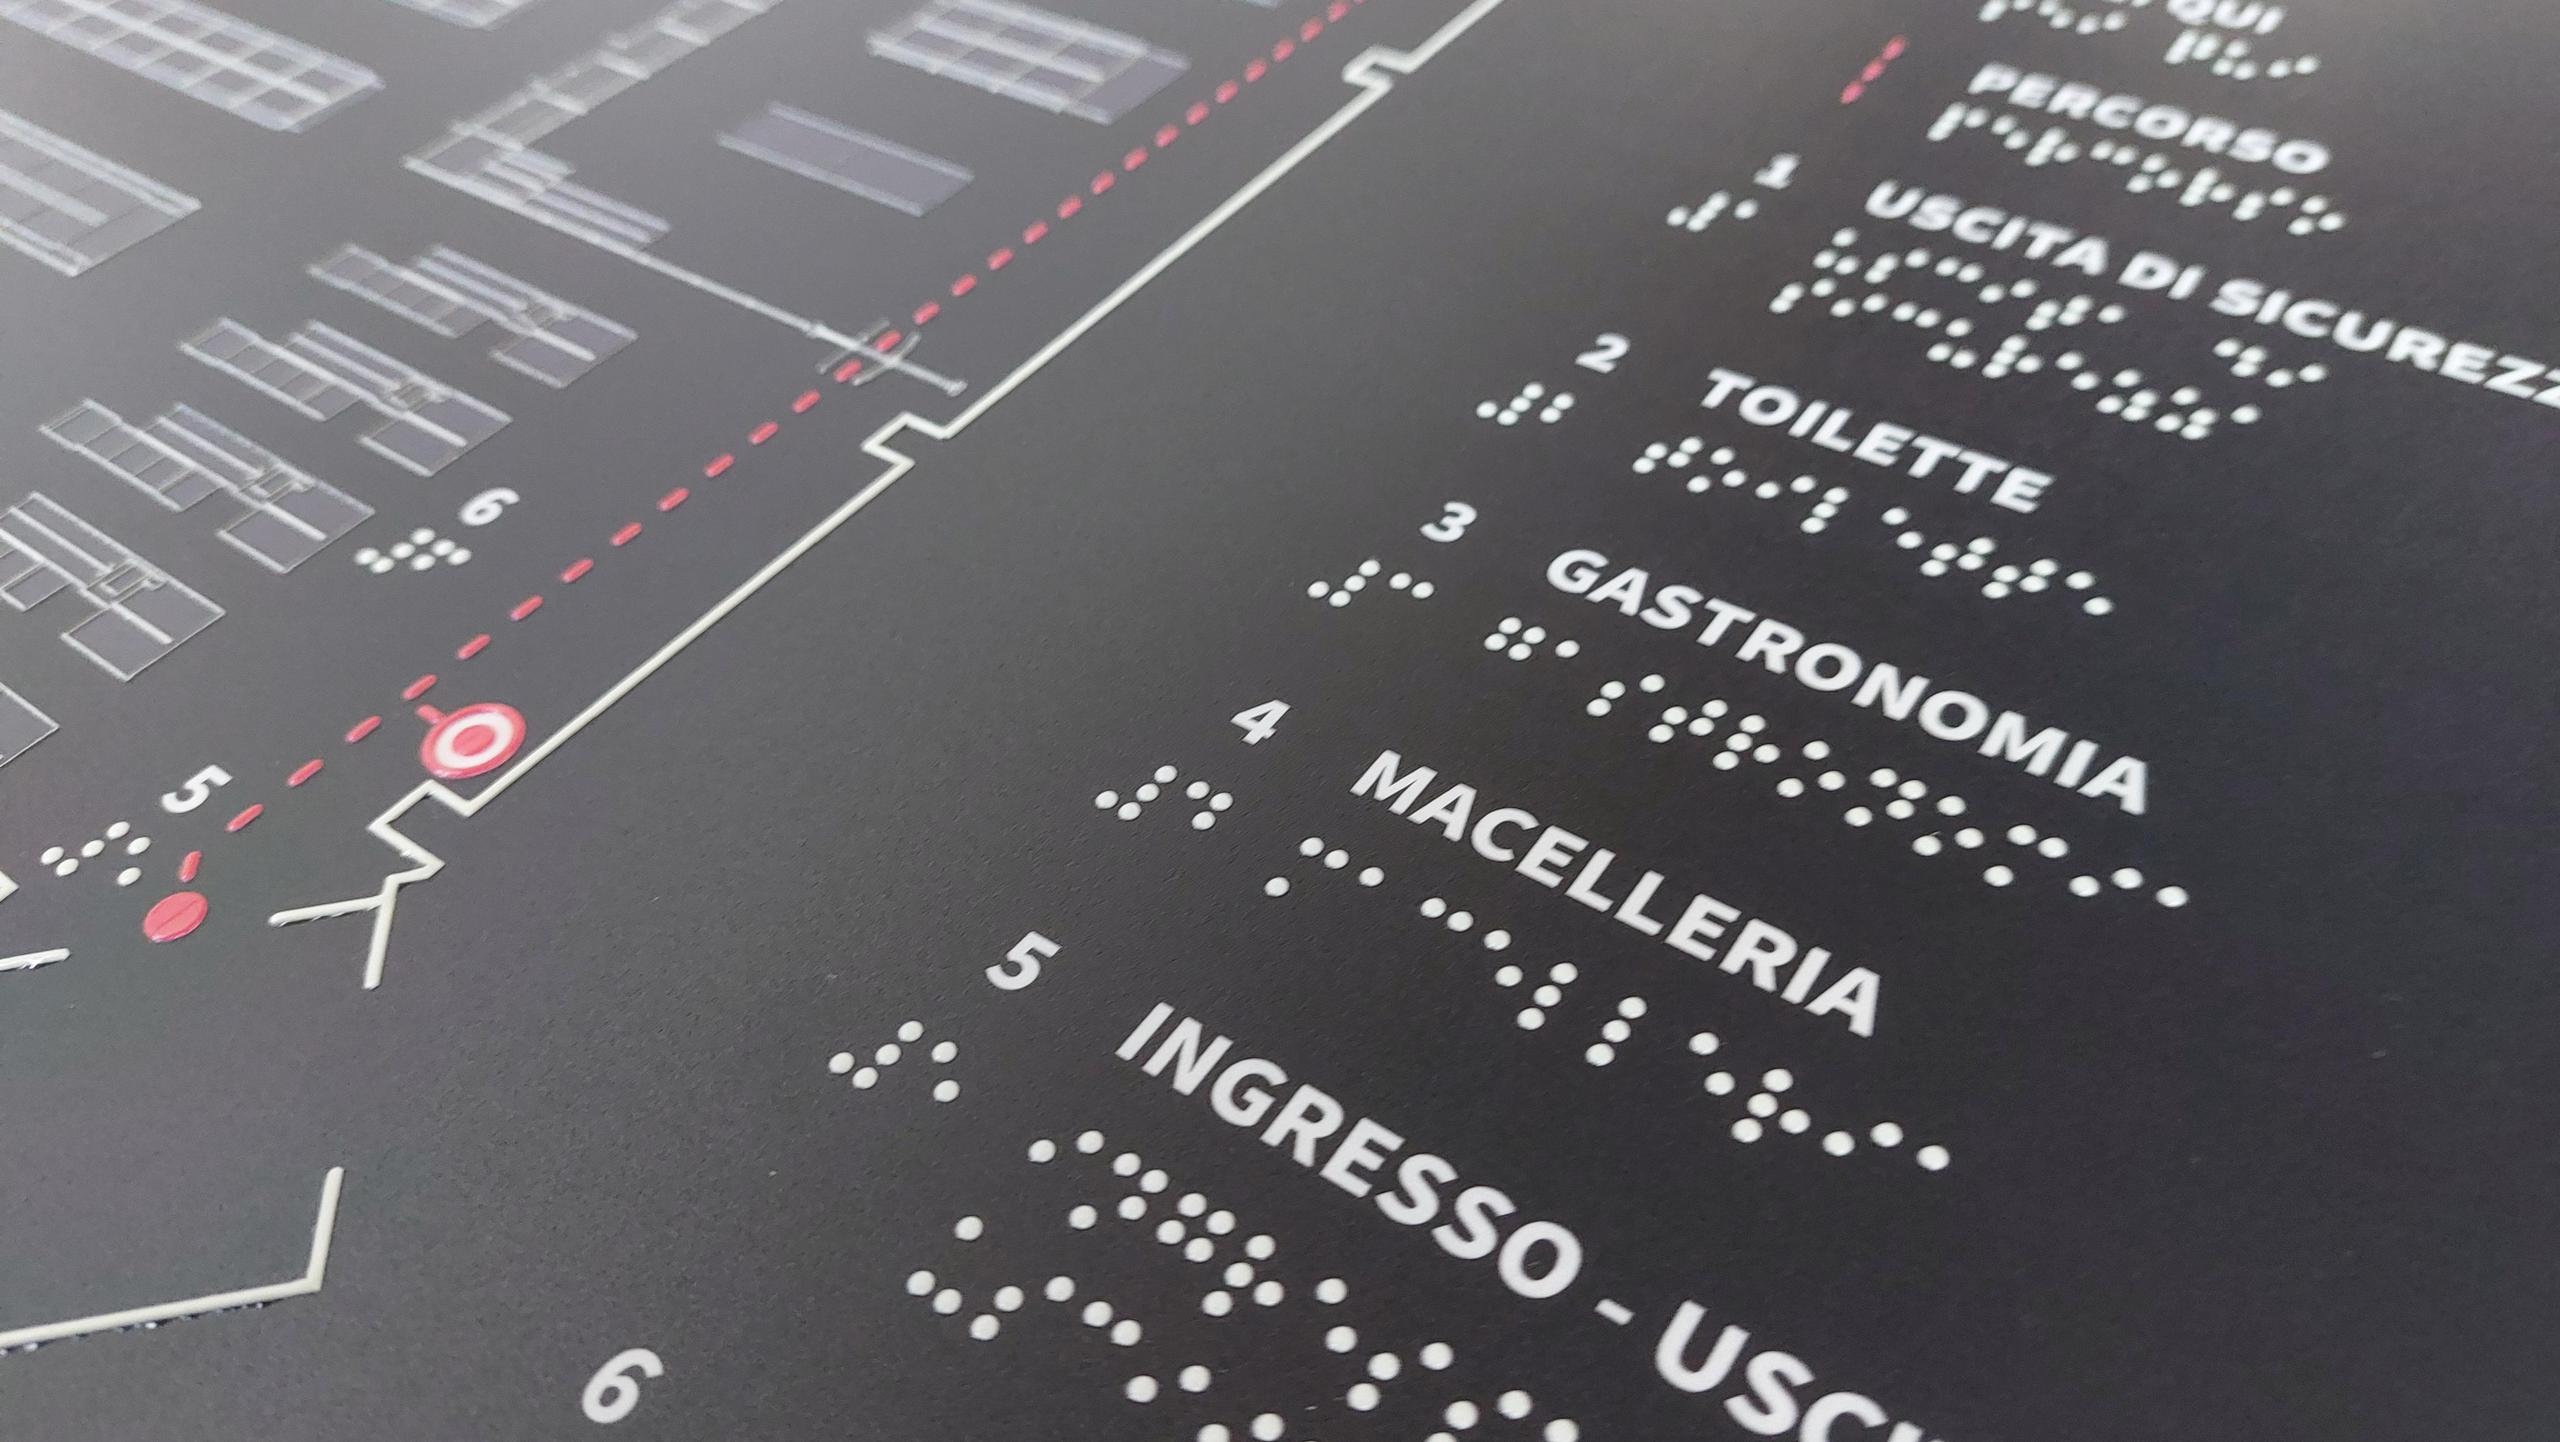 realizzato da Handy Systems mappa tattile - stampa Braille